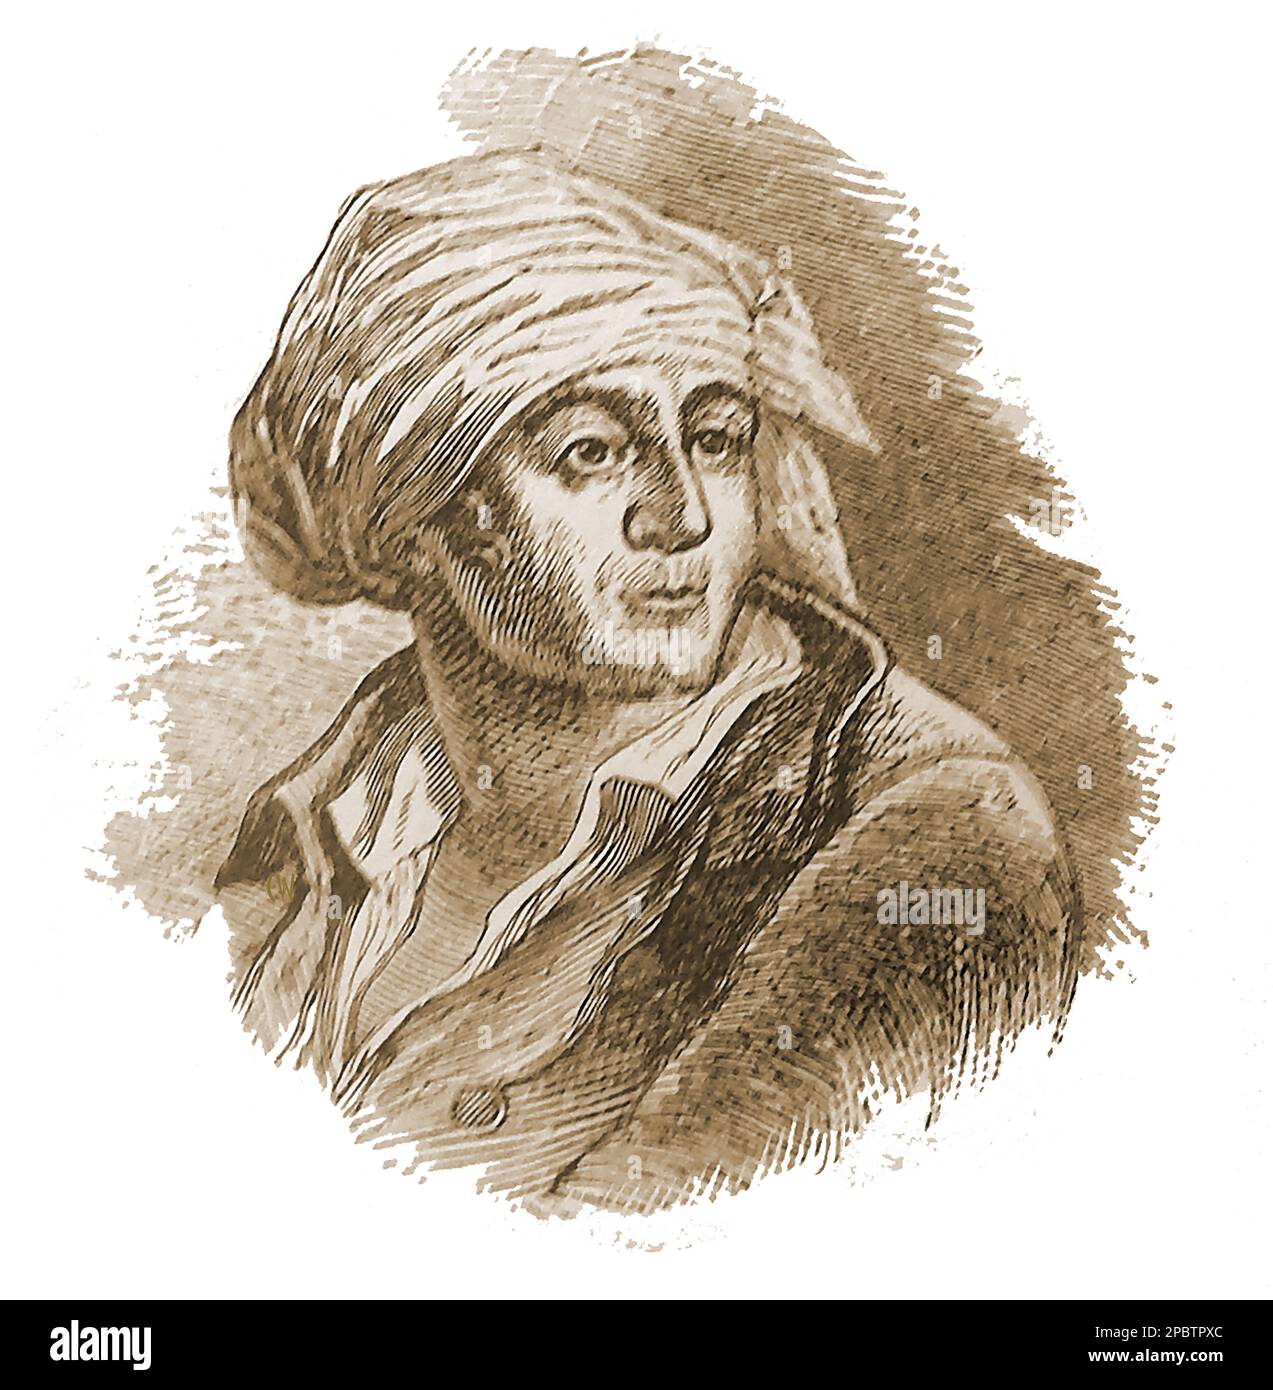 Un vieux portrait gravé du révolutionnaire français Jean Paul Marat (1743 – 1793).Marat faisait partie de la direction de la commune de Paris de la section Cordeliers et devint un chef du mouvement de la Révolution en 1789 . Il est né à Boudry, en Prusse (aujourd'hui la Suisse) et a passé un certain temps à Newcastle sur Tyne, en Angleterre-- une gravure ancienne portrait du révolutionnaire français Jean Paul Marat (1743 – 1793). Marat fait partie de la direction de la commune de Paris de la section des Cordeliers et est revenu un chef de file du mouvement de la révolution en 1789. Banque D'Images